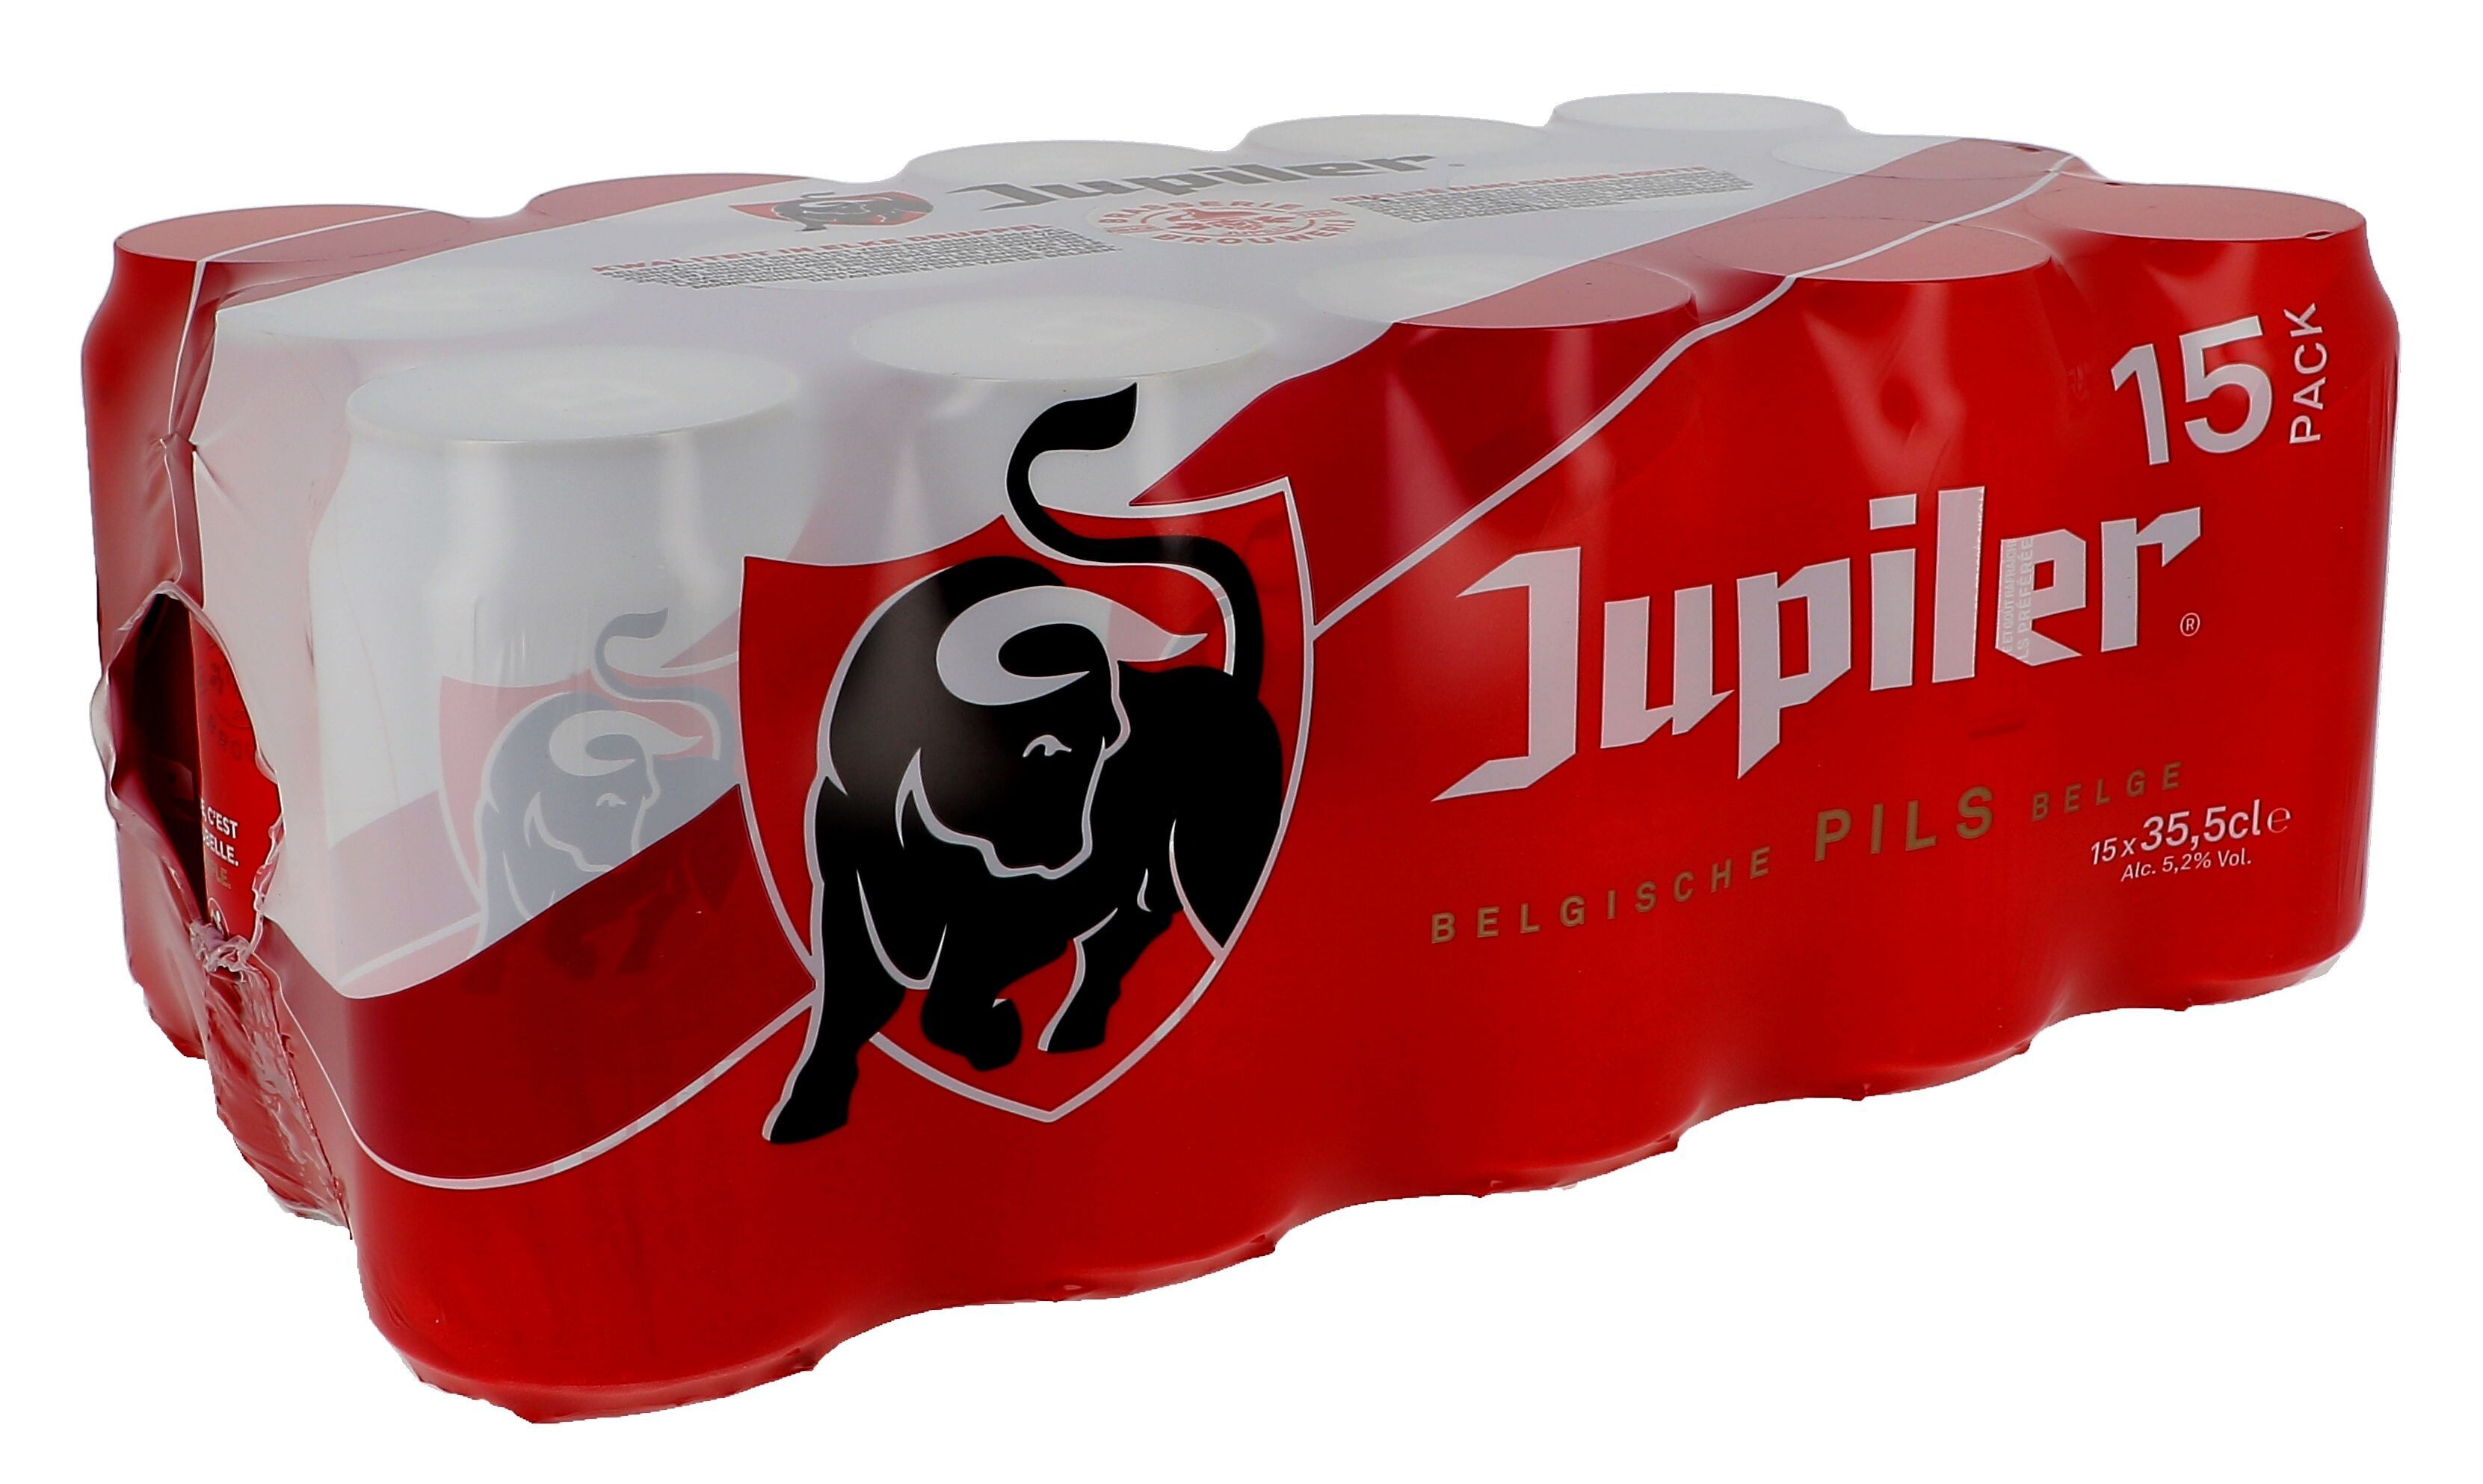 Jupiler CAN 5.2% 15x35.5cl Belgian Beer